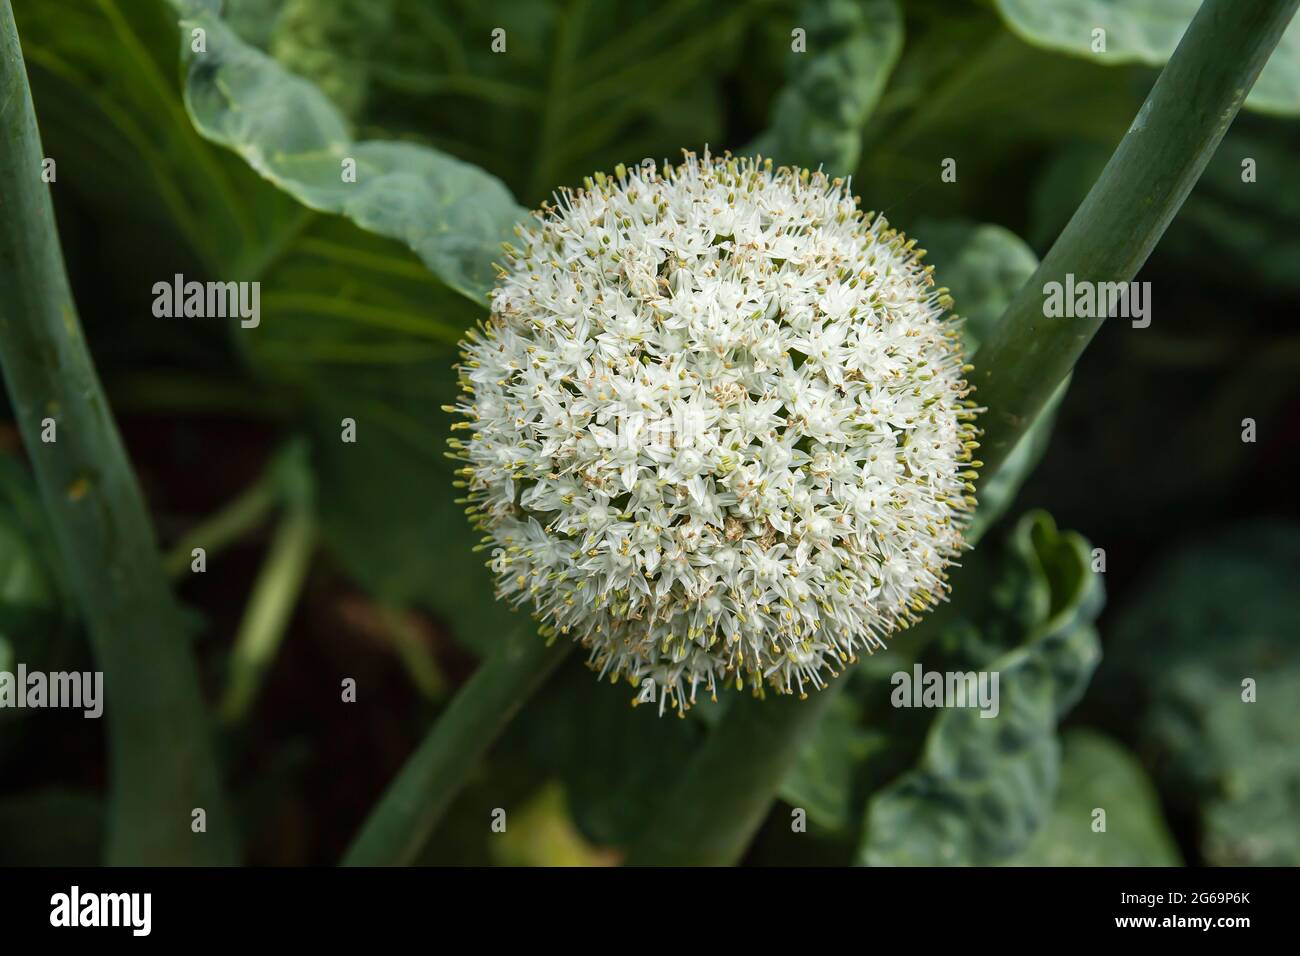 Allium cepa oder gewöhnliche Zwiebelzwiebeln, weiße Blüten, die im grünen Küchengarten blühen Stockfoto